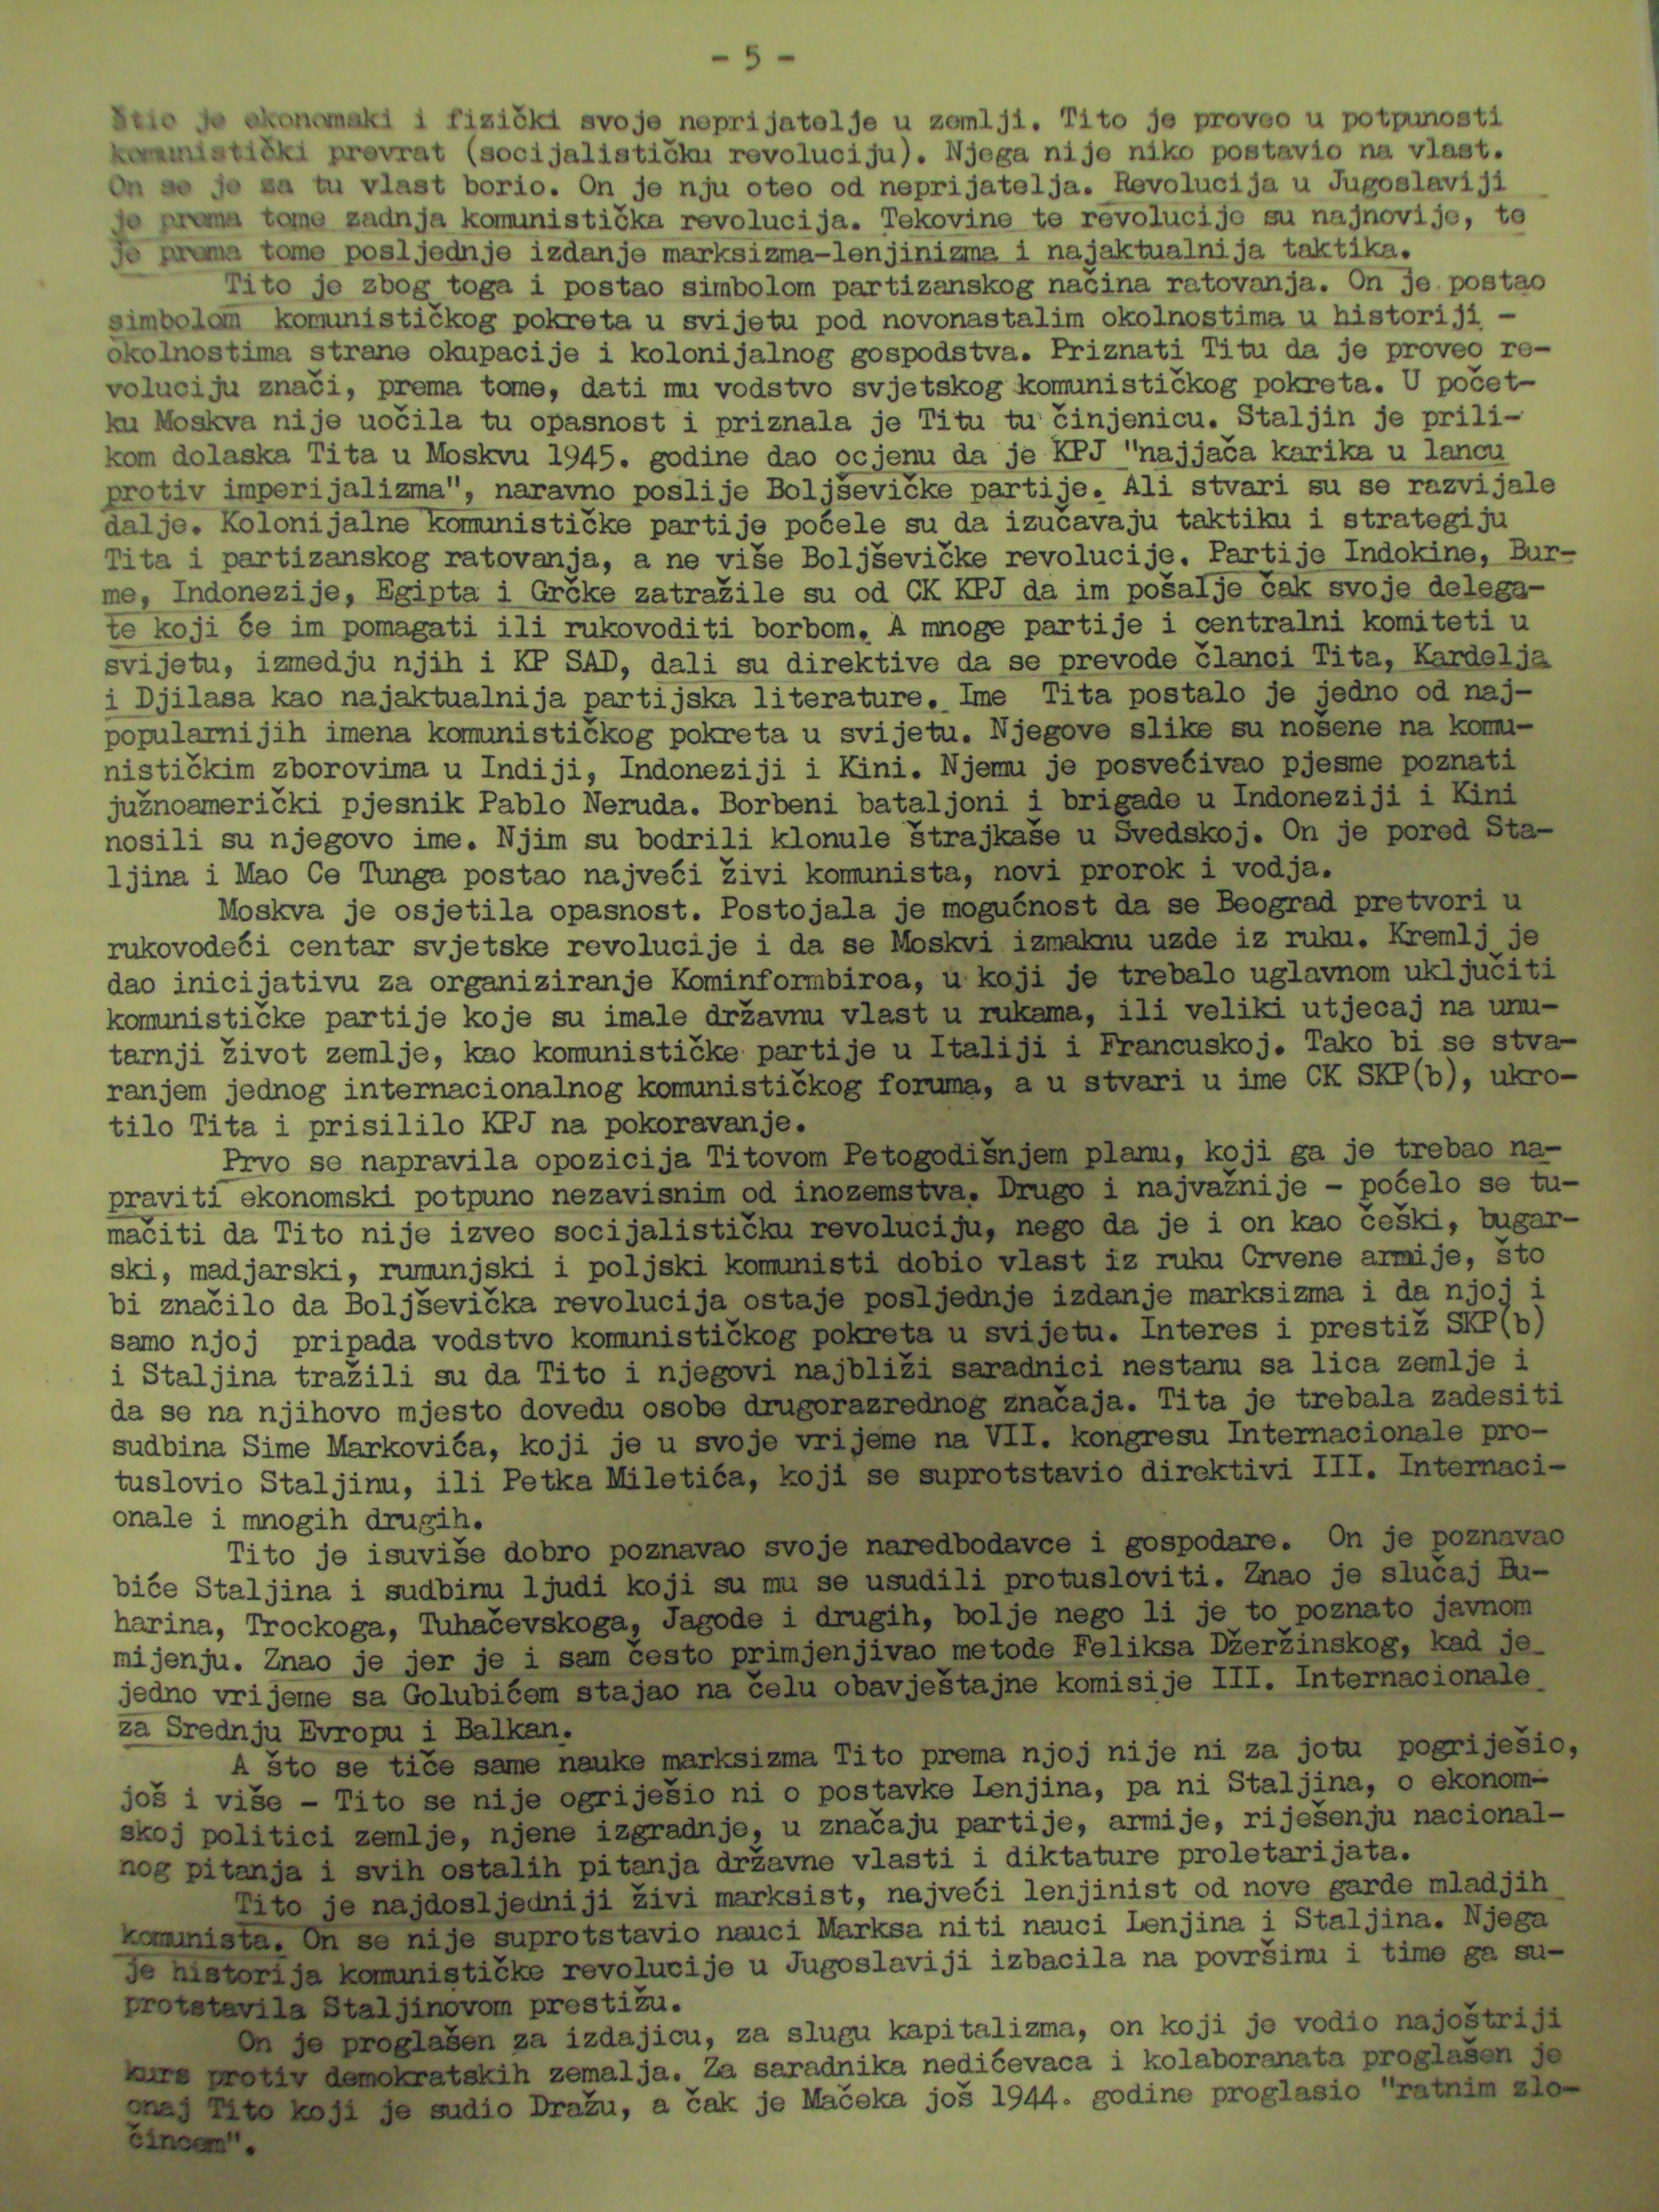 Juretić, Augustin. Suština sukoba Kominform – Tito (Hrvatski dom), 1950. Članak.